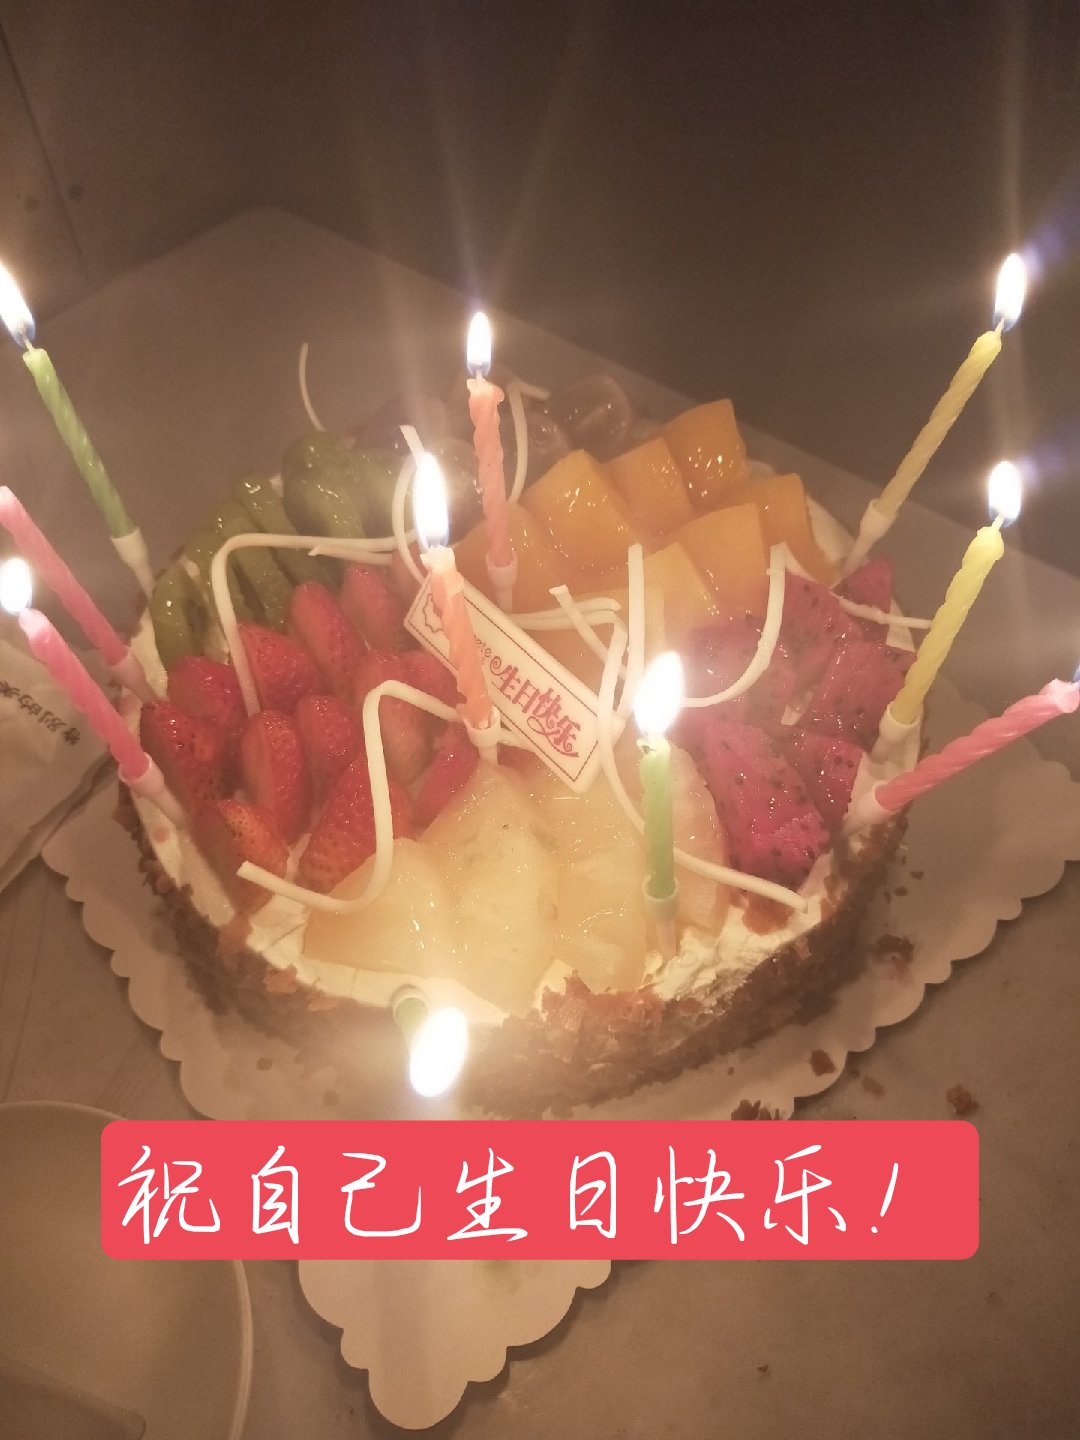 祝自己十八岁生日快乐!   感谢姐姐送的蛋糕! 满满的感动!  7月前